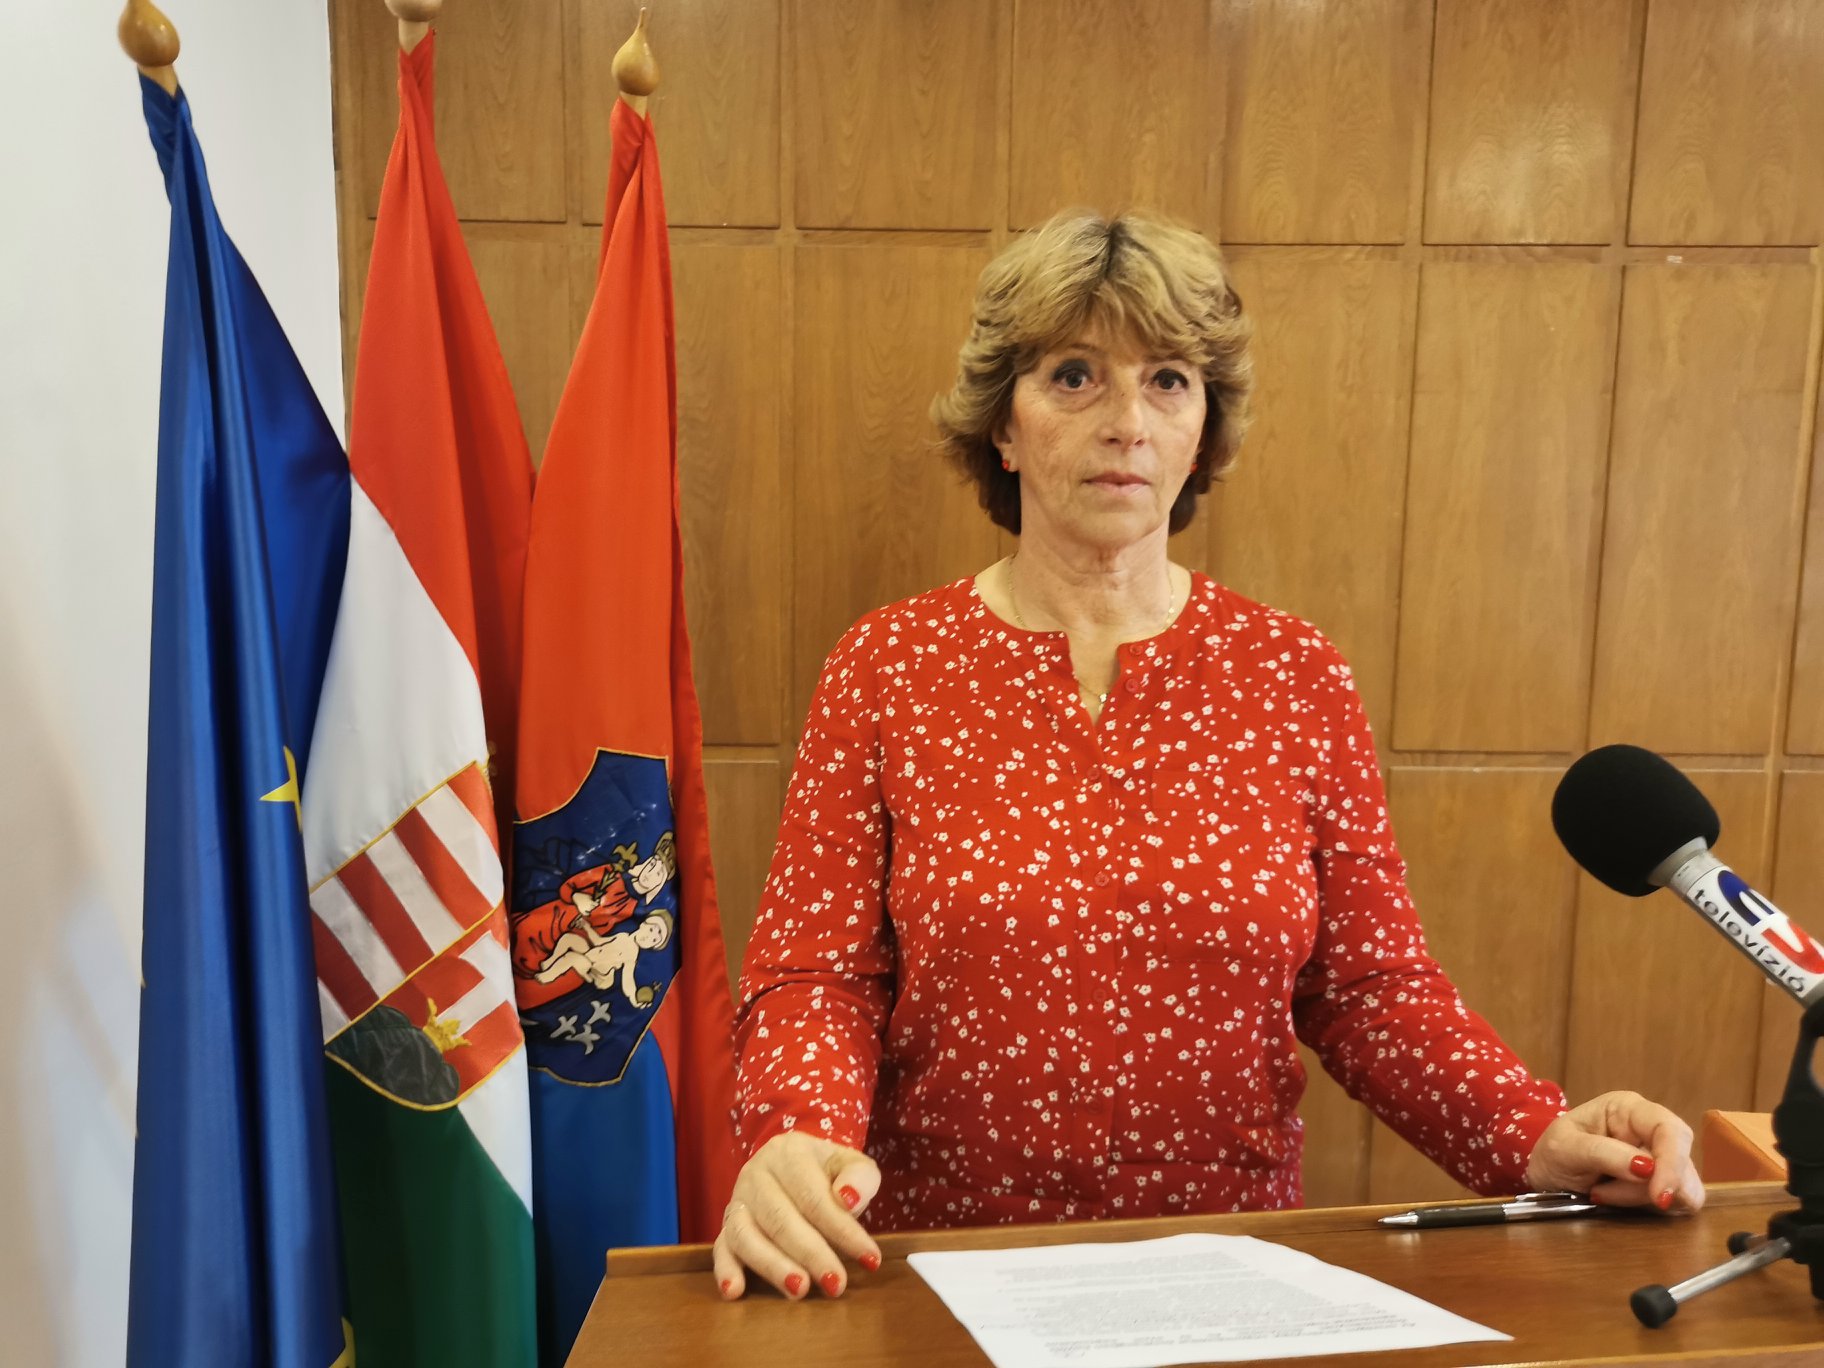 Újrázott Matkovich Ilona, továbbra is ő marad Vác polgármestere